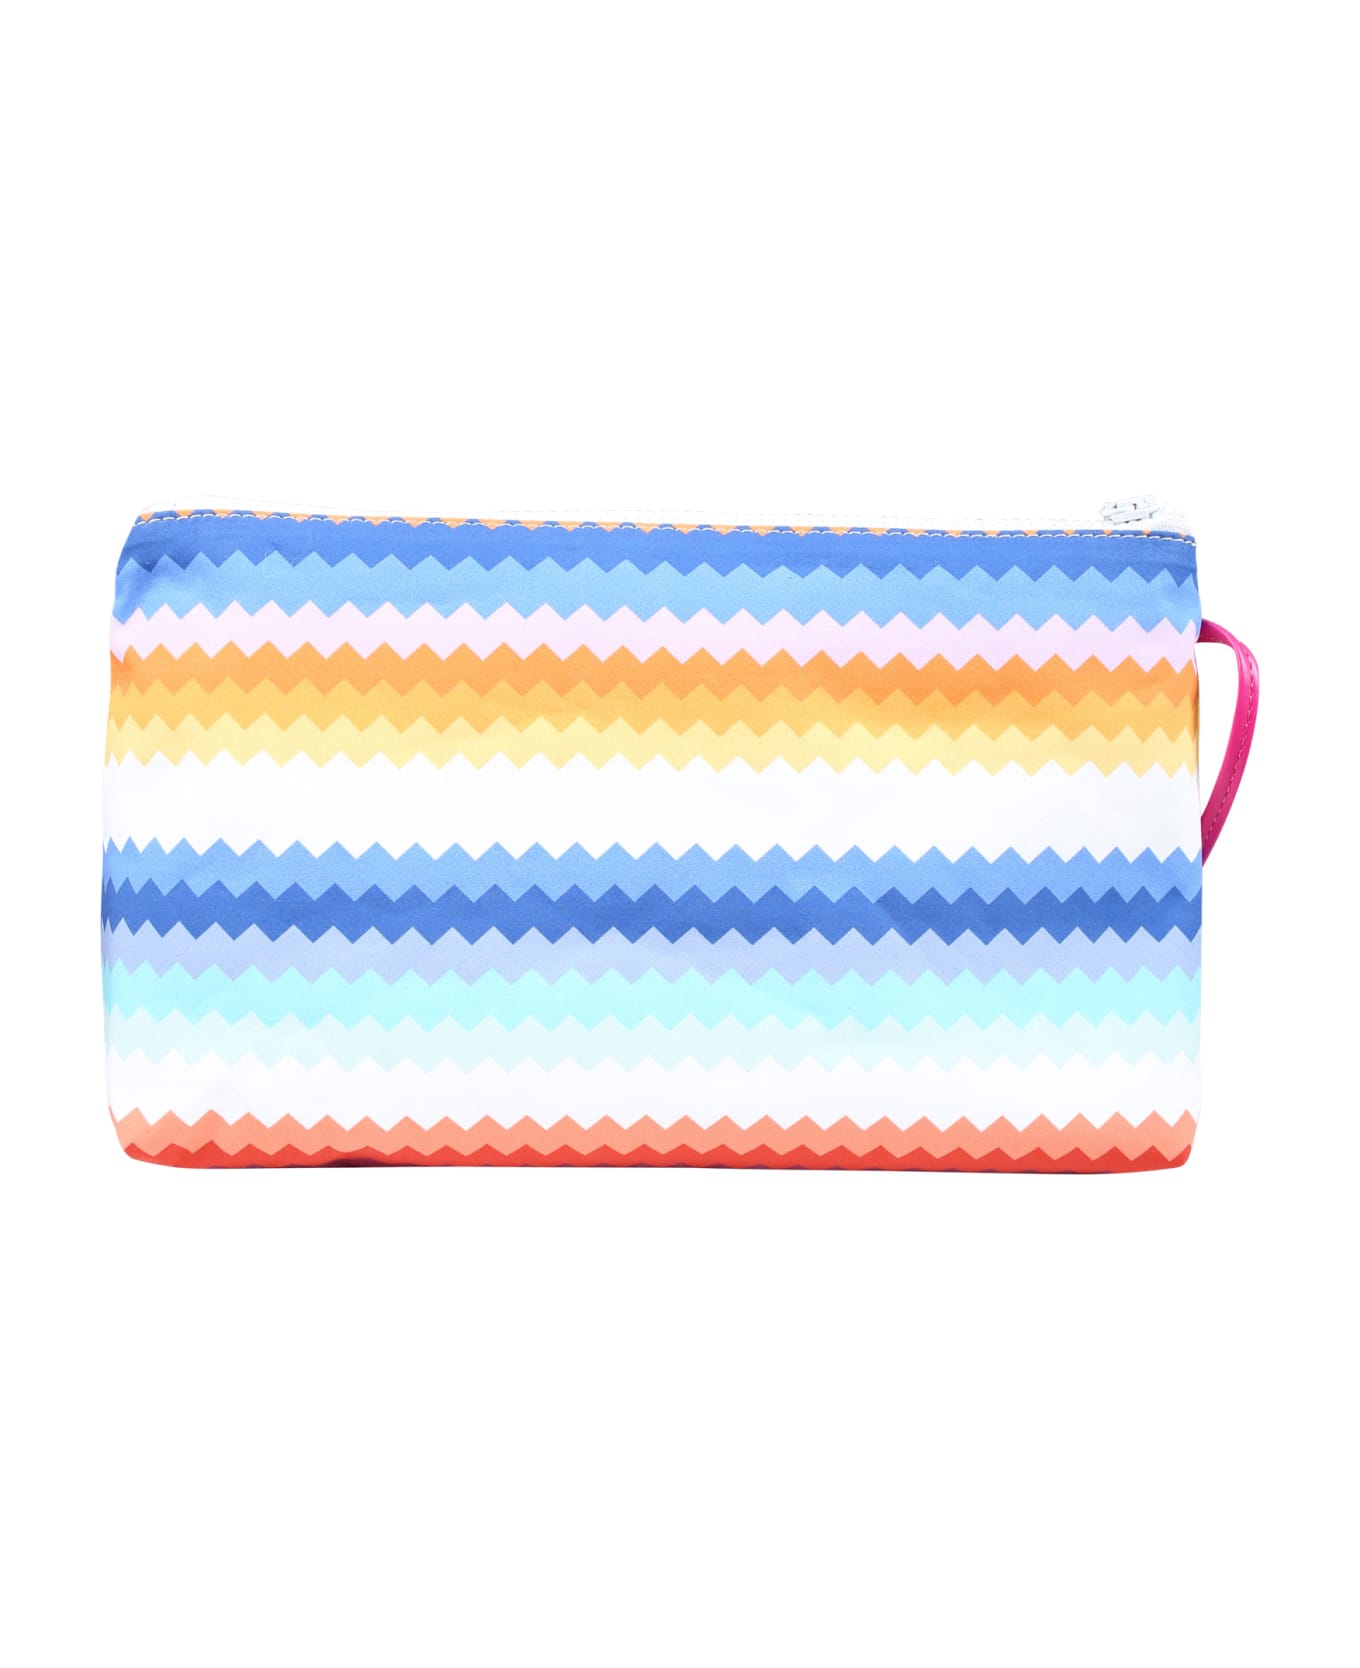 Missoni Multicolor Beach Bag For Girl - Multicolor